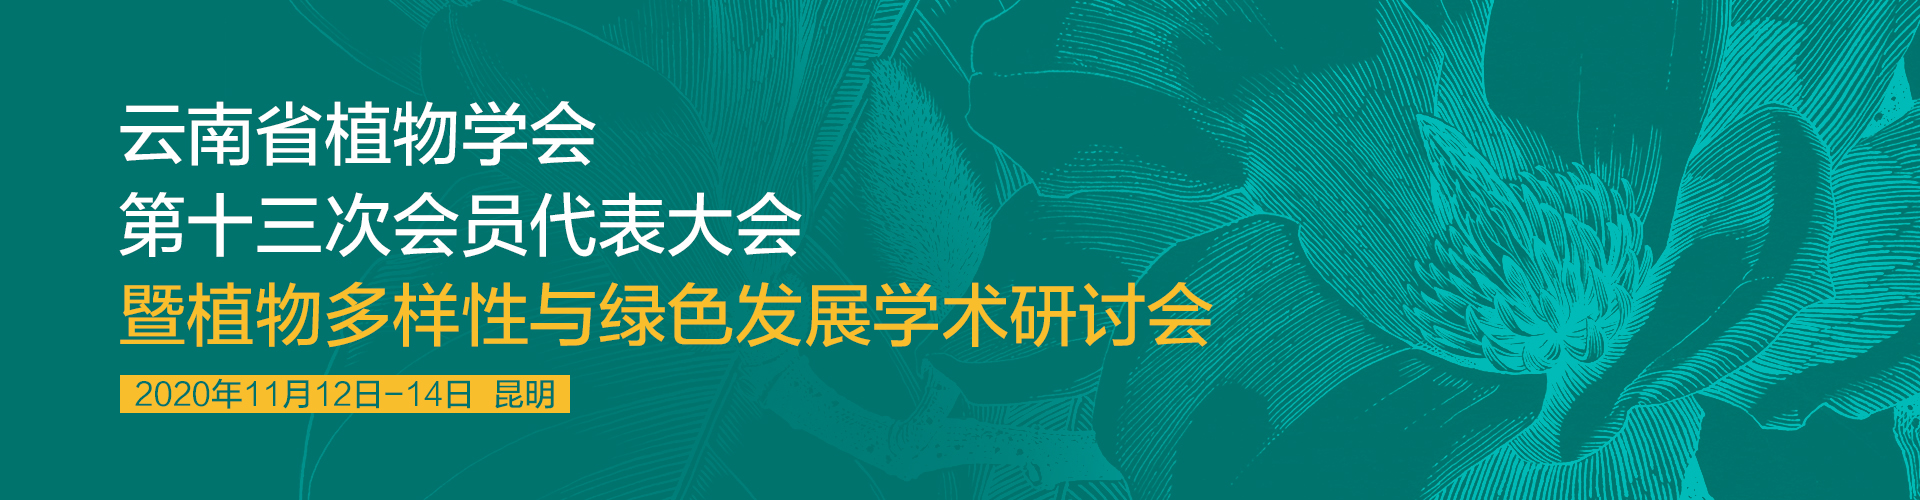 云南省植物学会第十三次会员代表大会 暨植物多样性与绿色发展学术研讨会